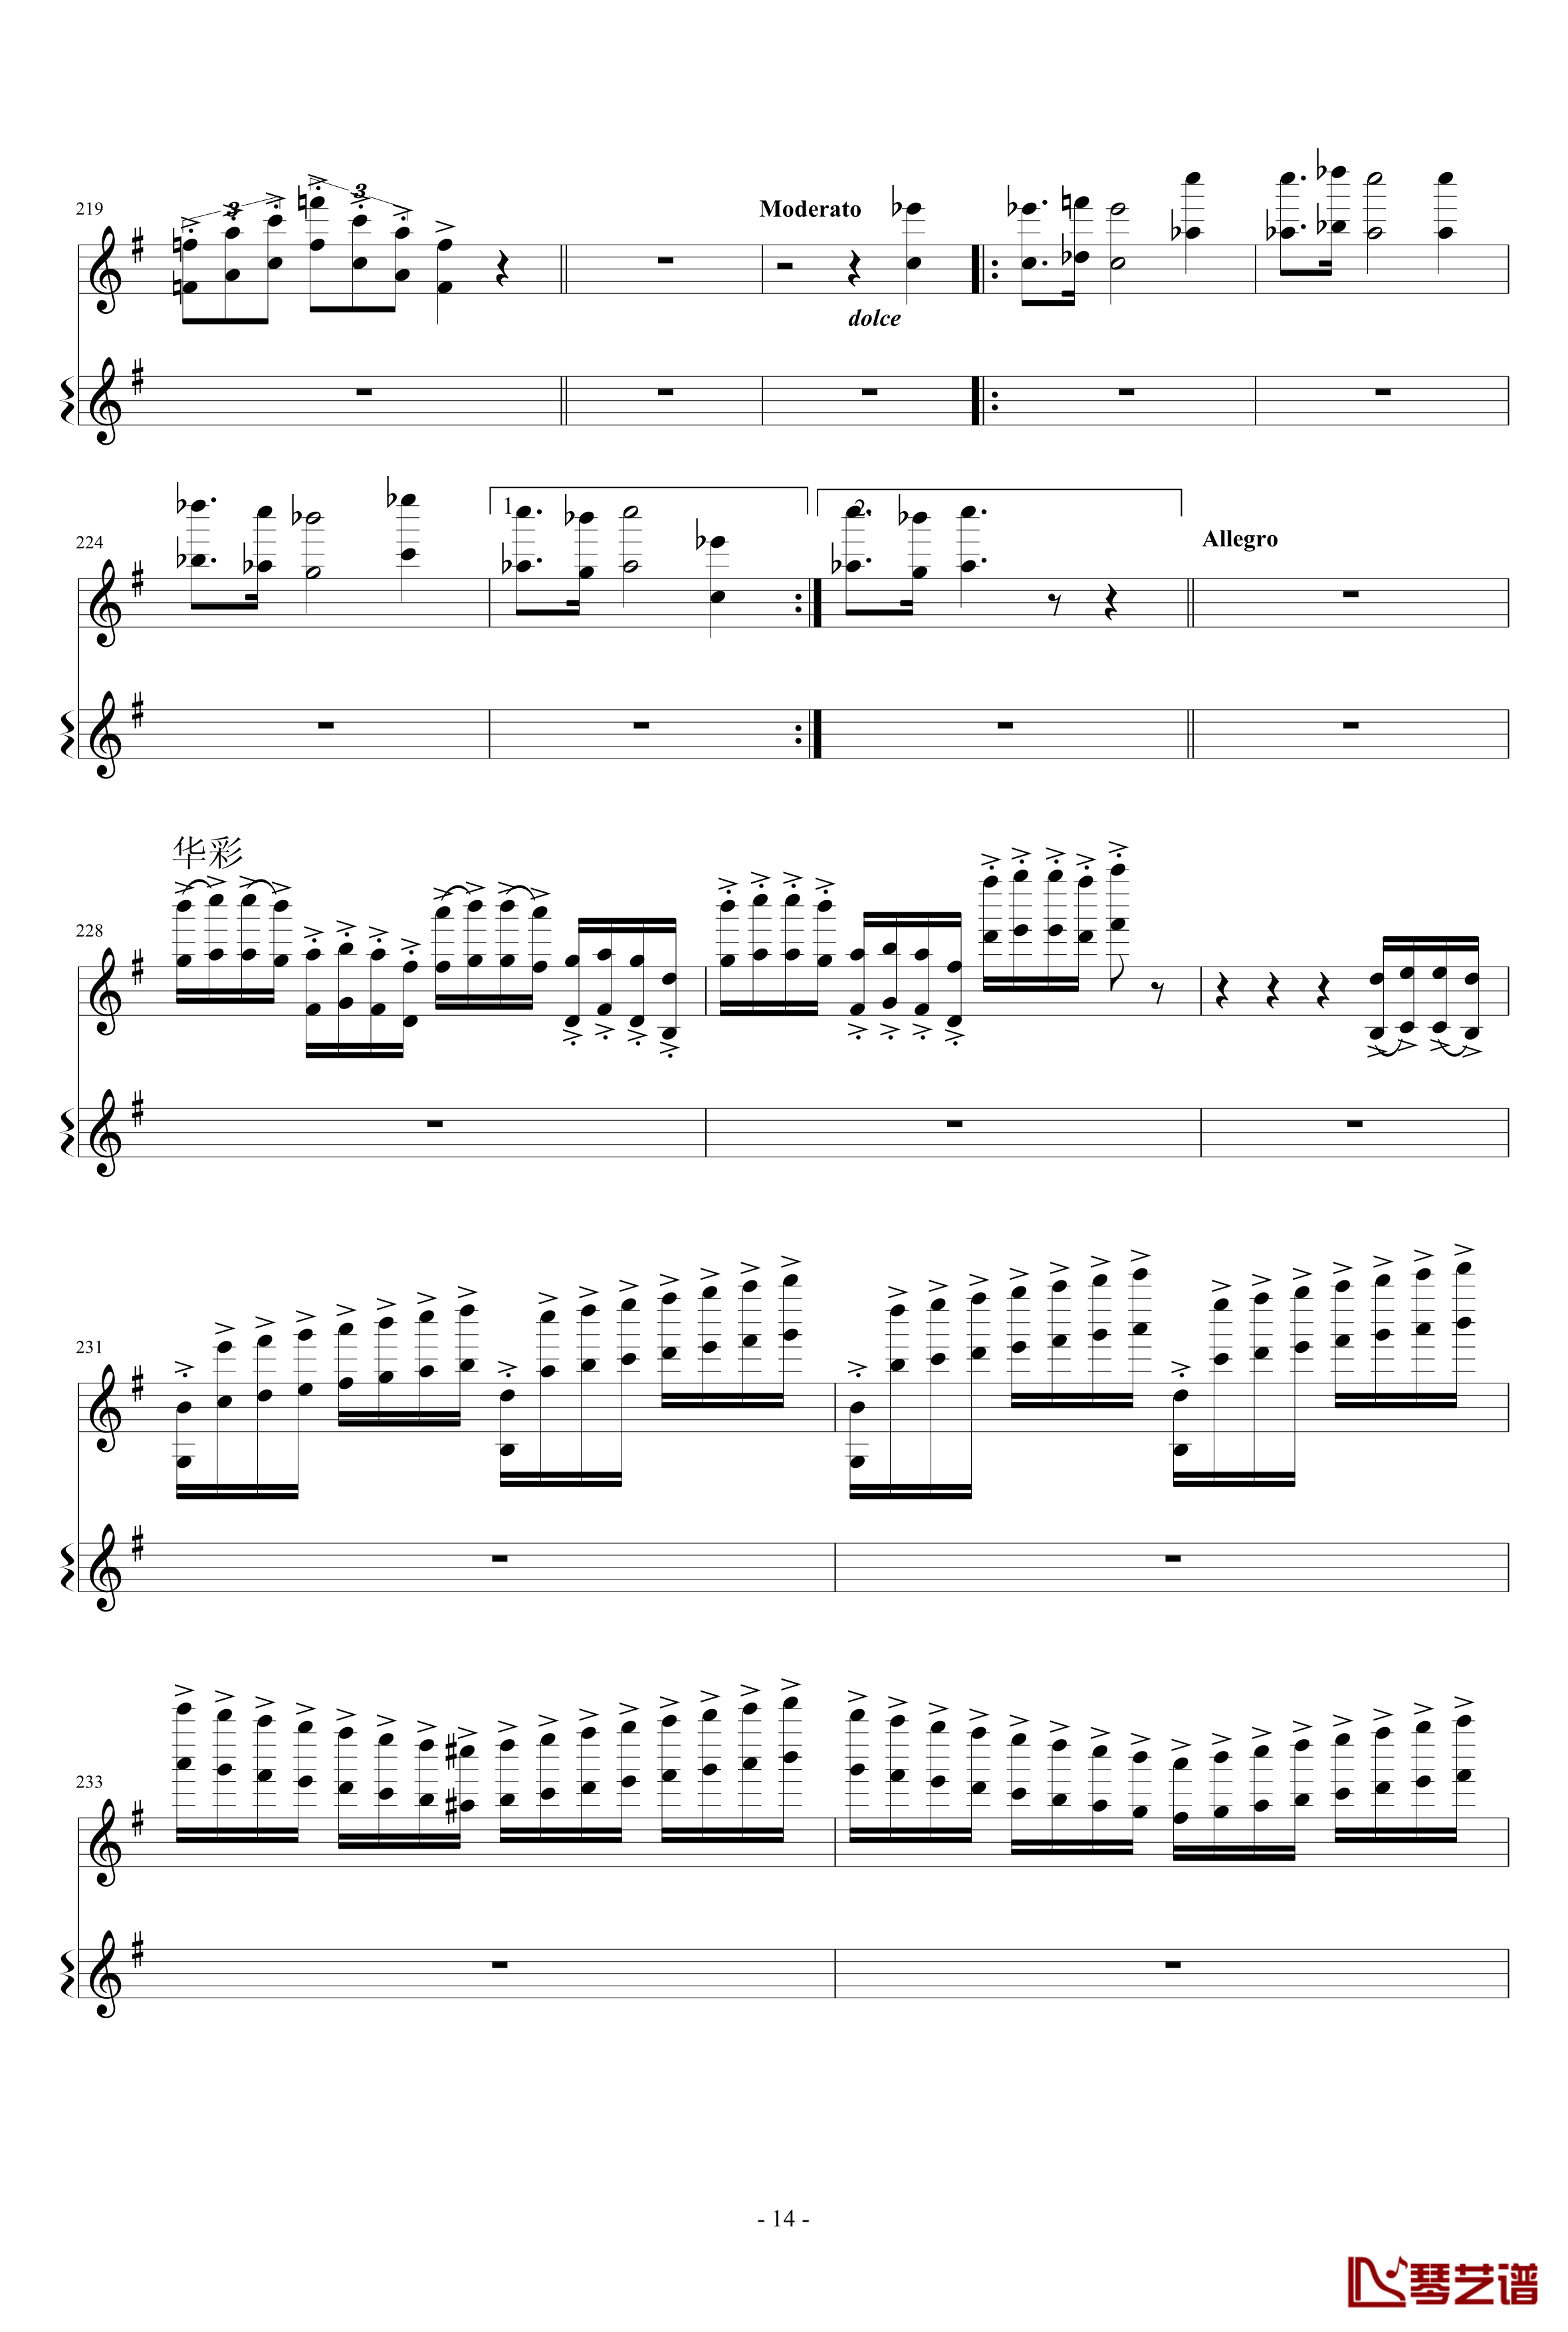 意大利国歌变奏曲钢琴谱-只修改了一个音-DXF14